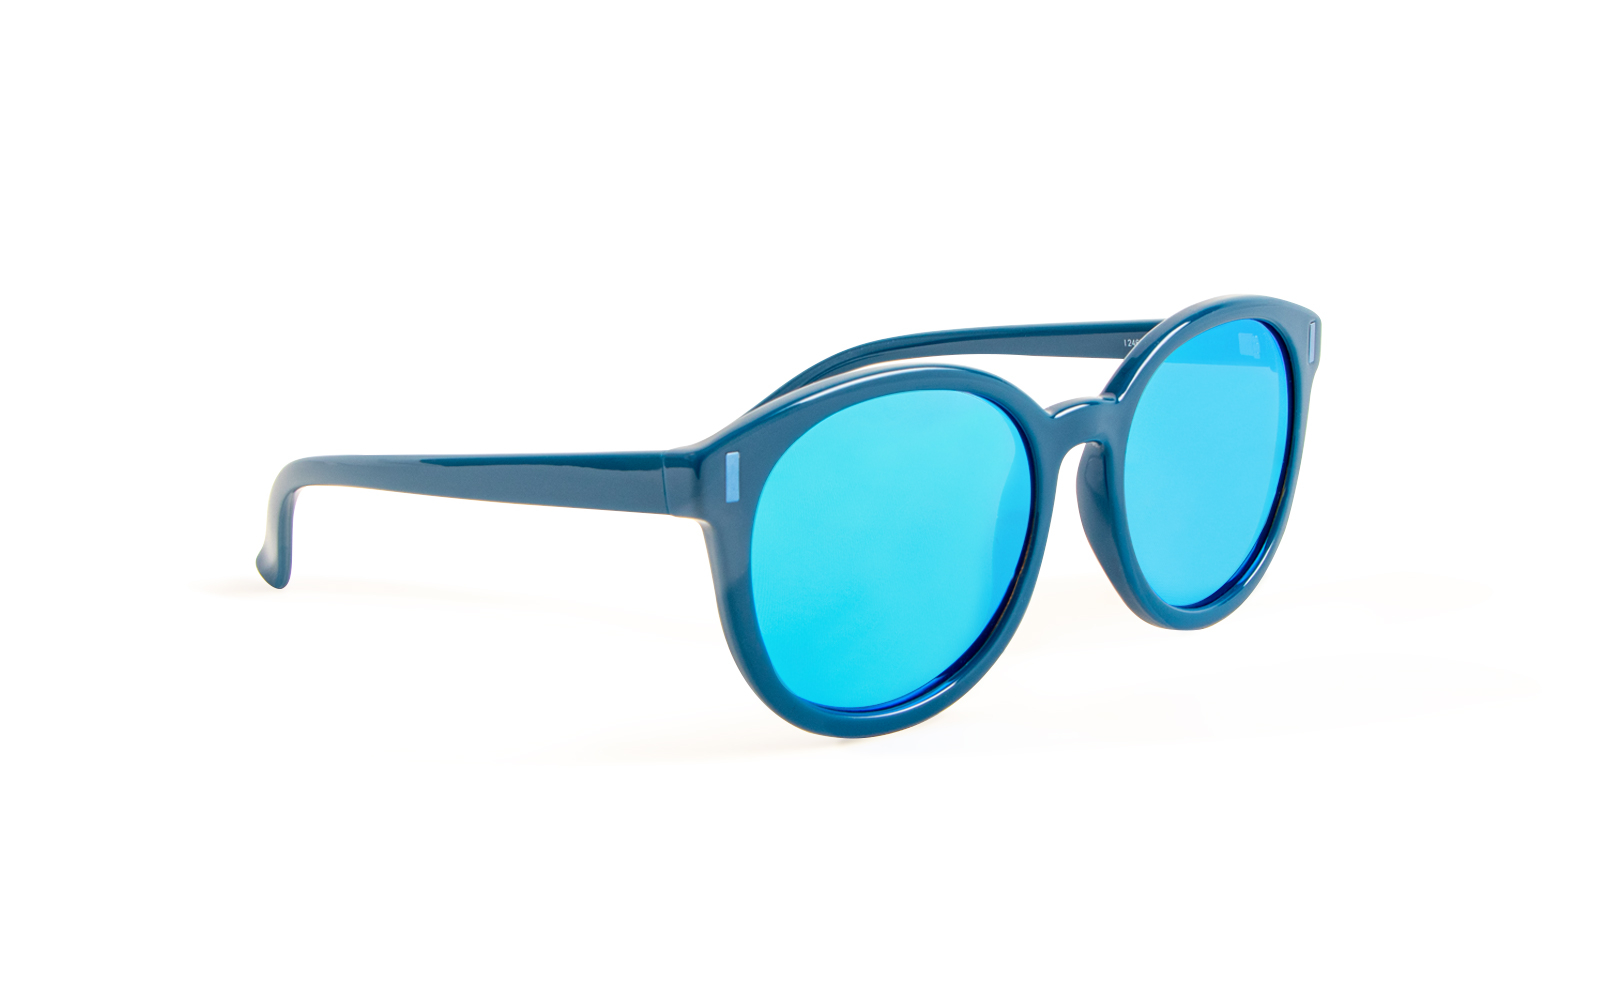 Invicta Men's Pro Diver Round Sunglasses, Blue (24624-PRO-06)